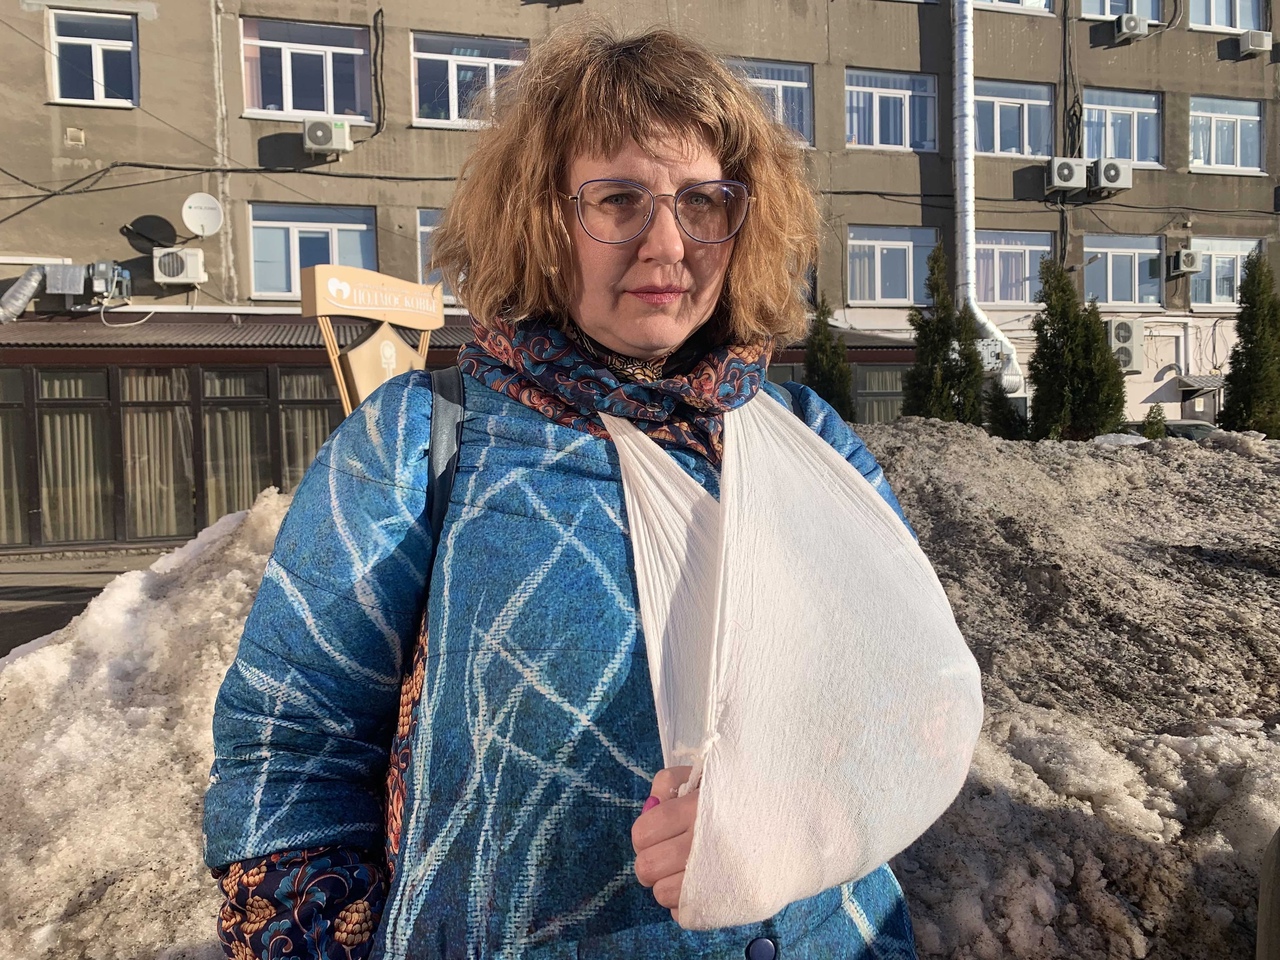 «Мы вам не уборщицы»: сломавшая в центре занятости руку ярославна подала в суд